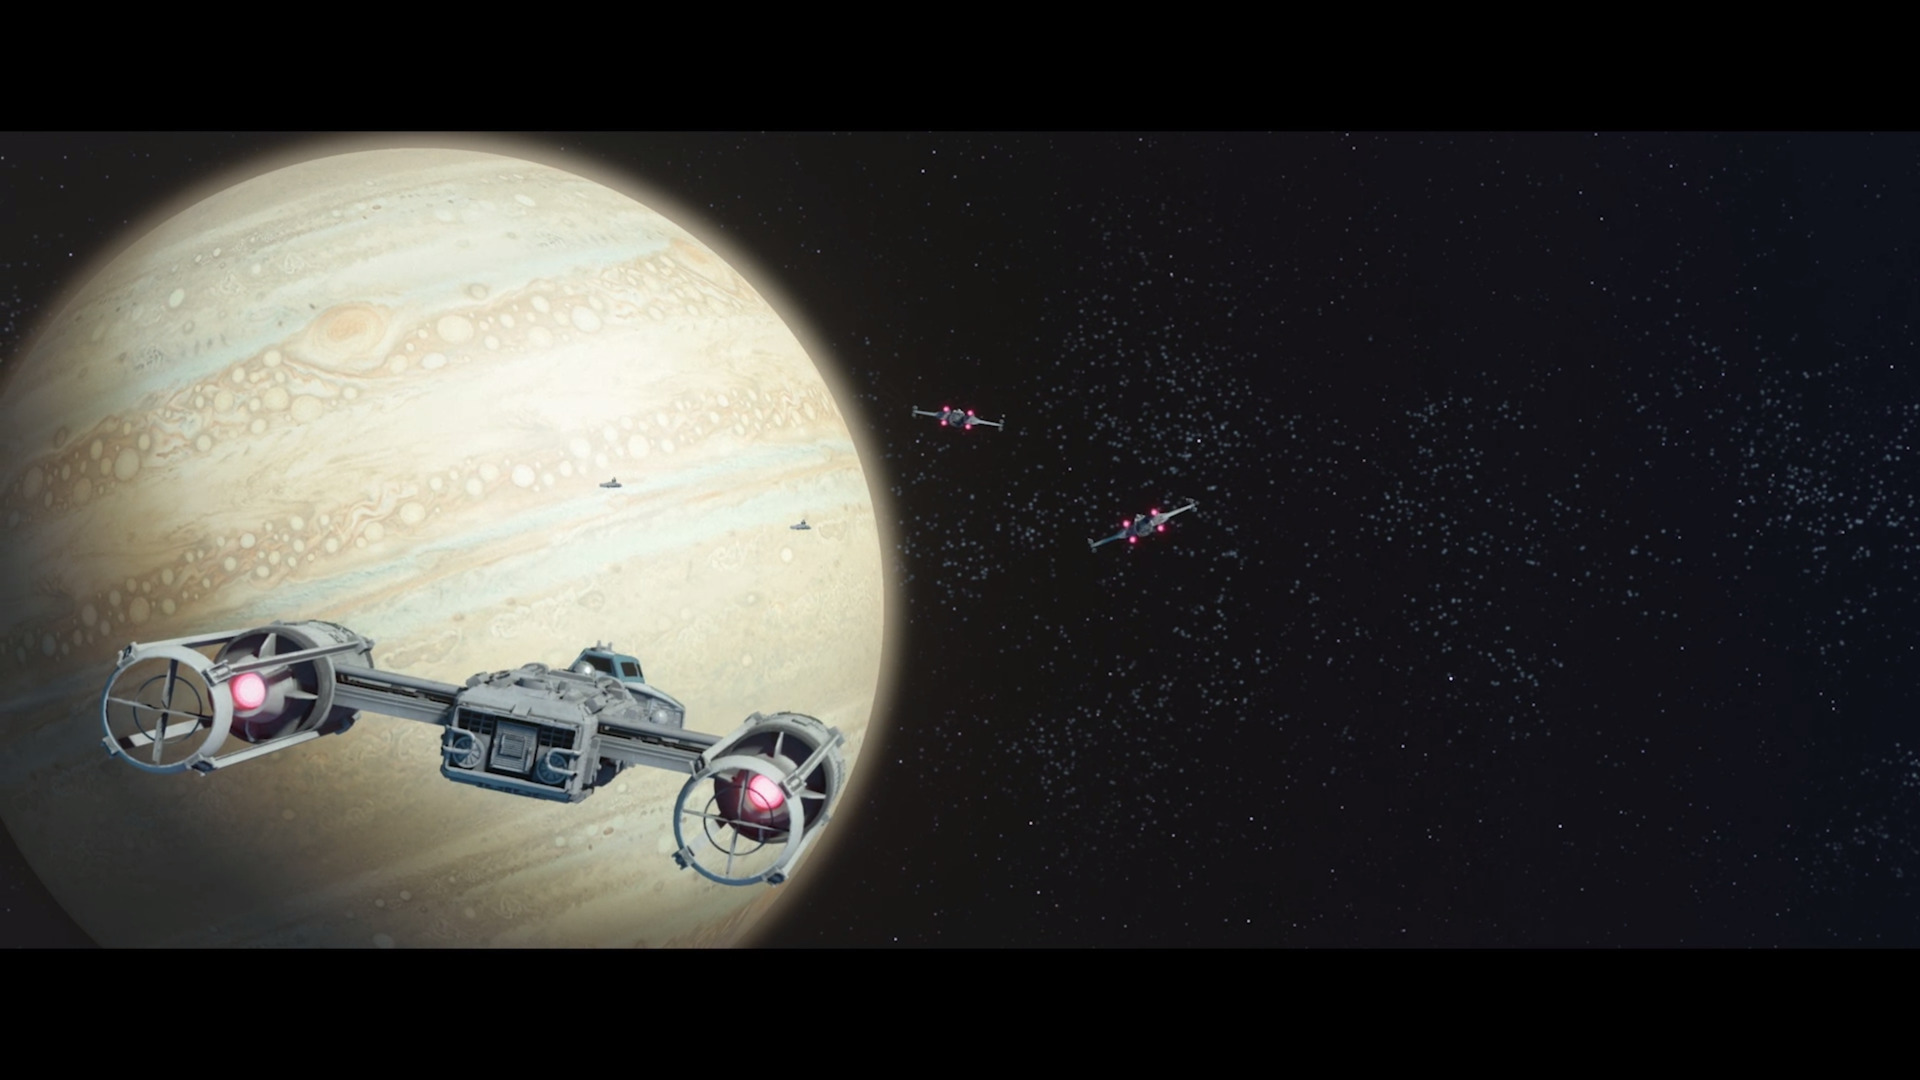 "Звёздные войны" в космосе: Обзор Star Wars: Squadrons